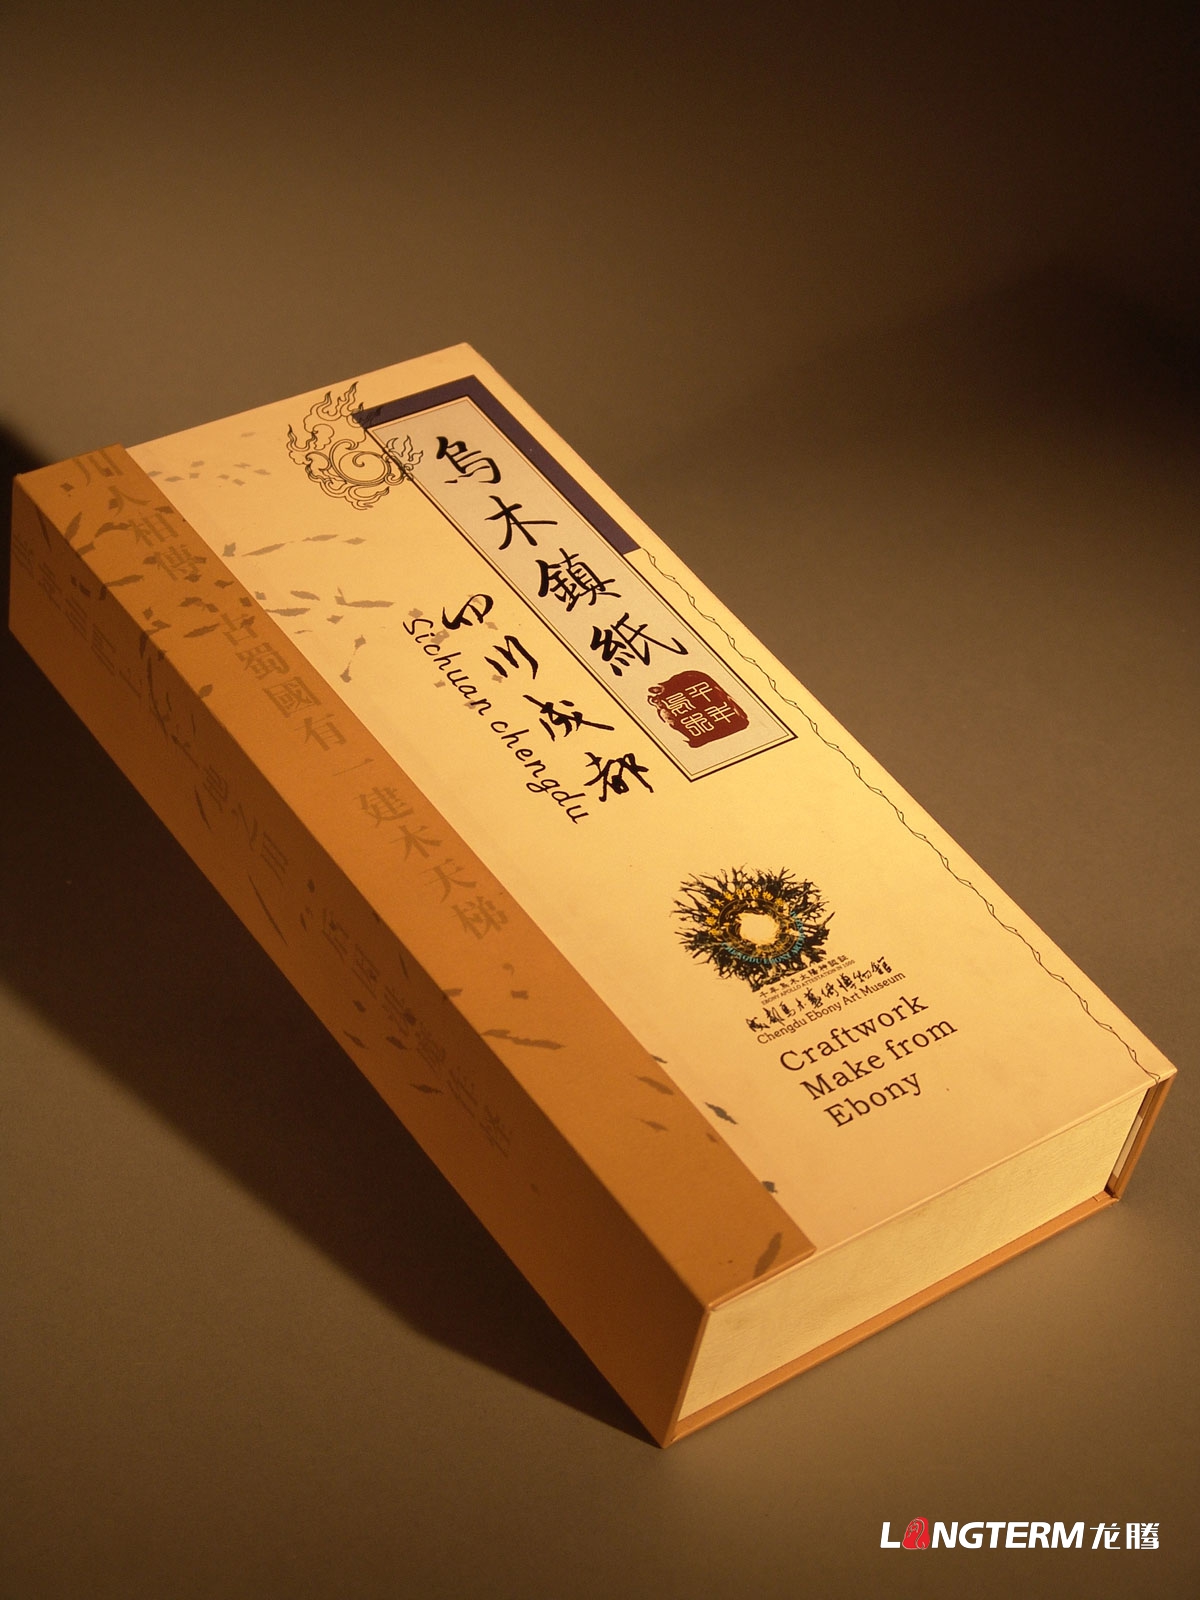 四川成都乌木镇纸包装设计|旅游纪念品艺术品博物馆产品包装设计效果图